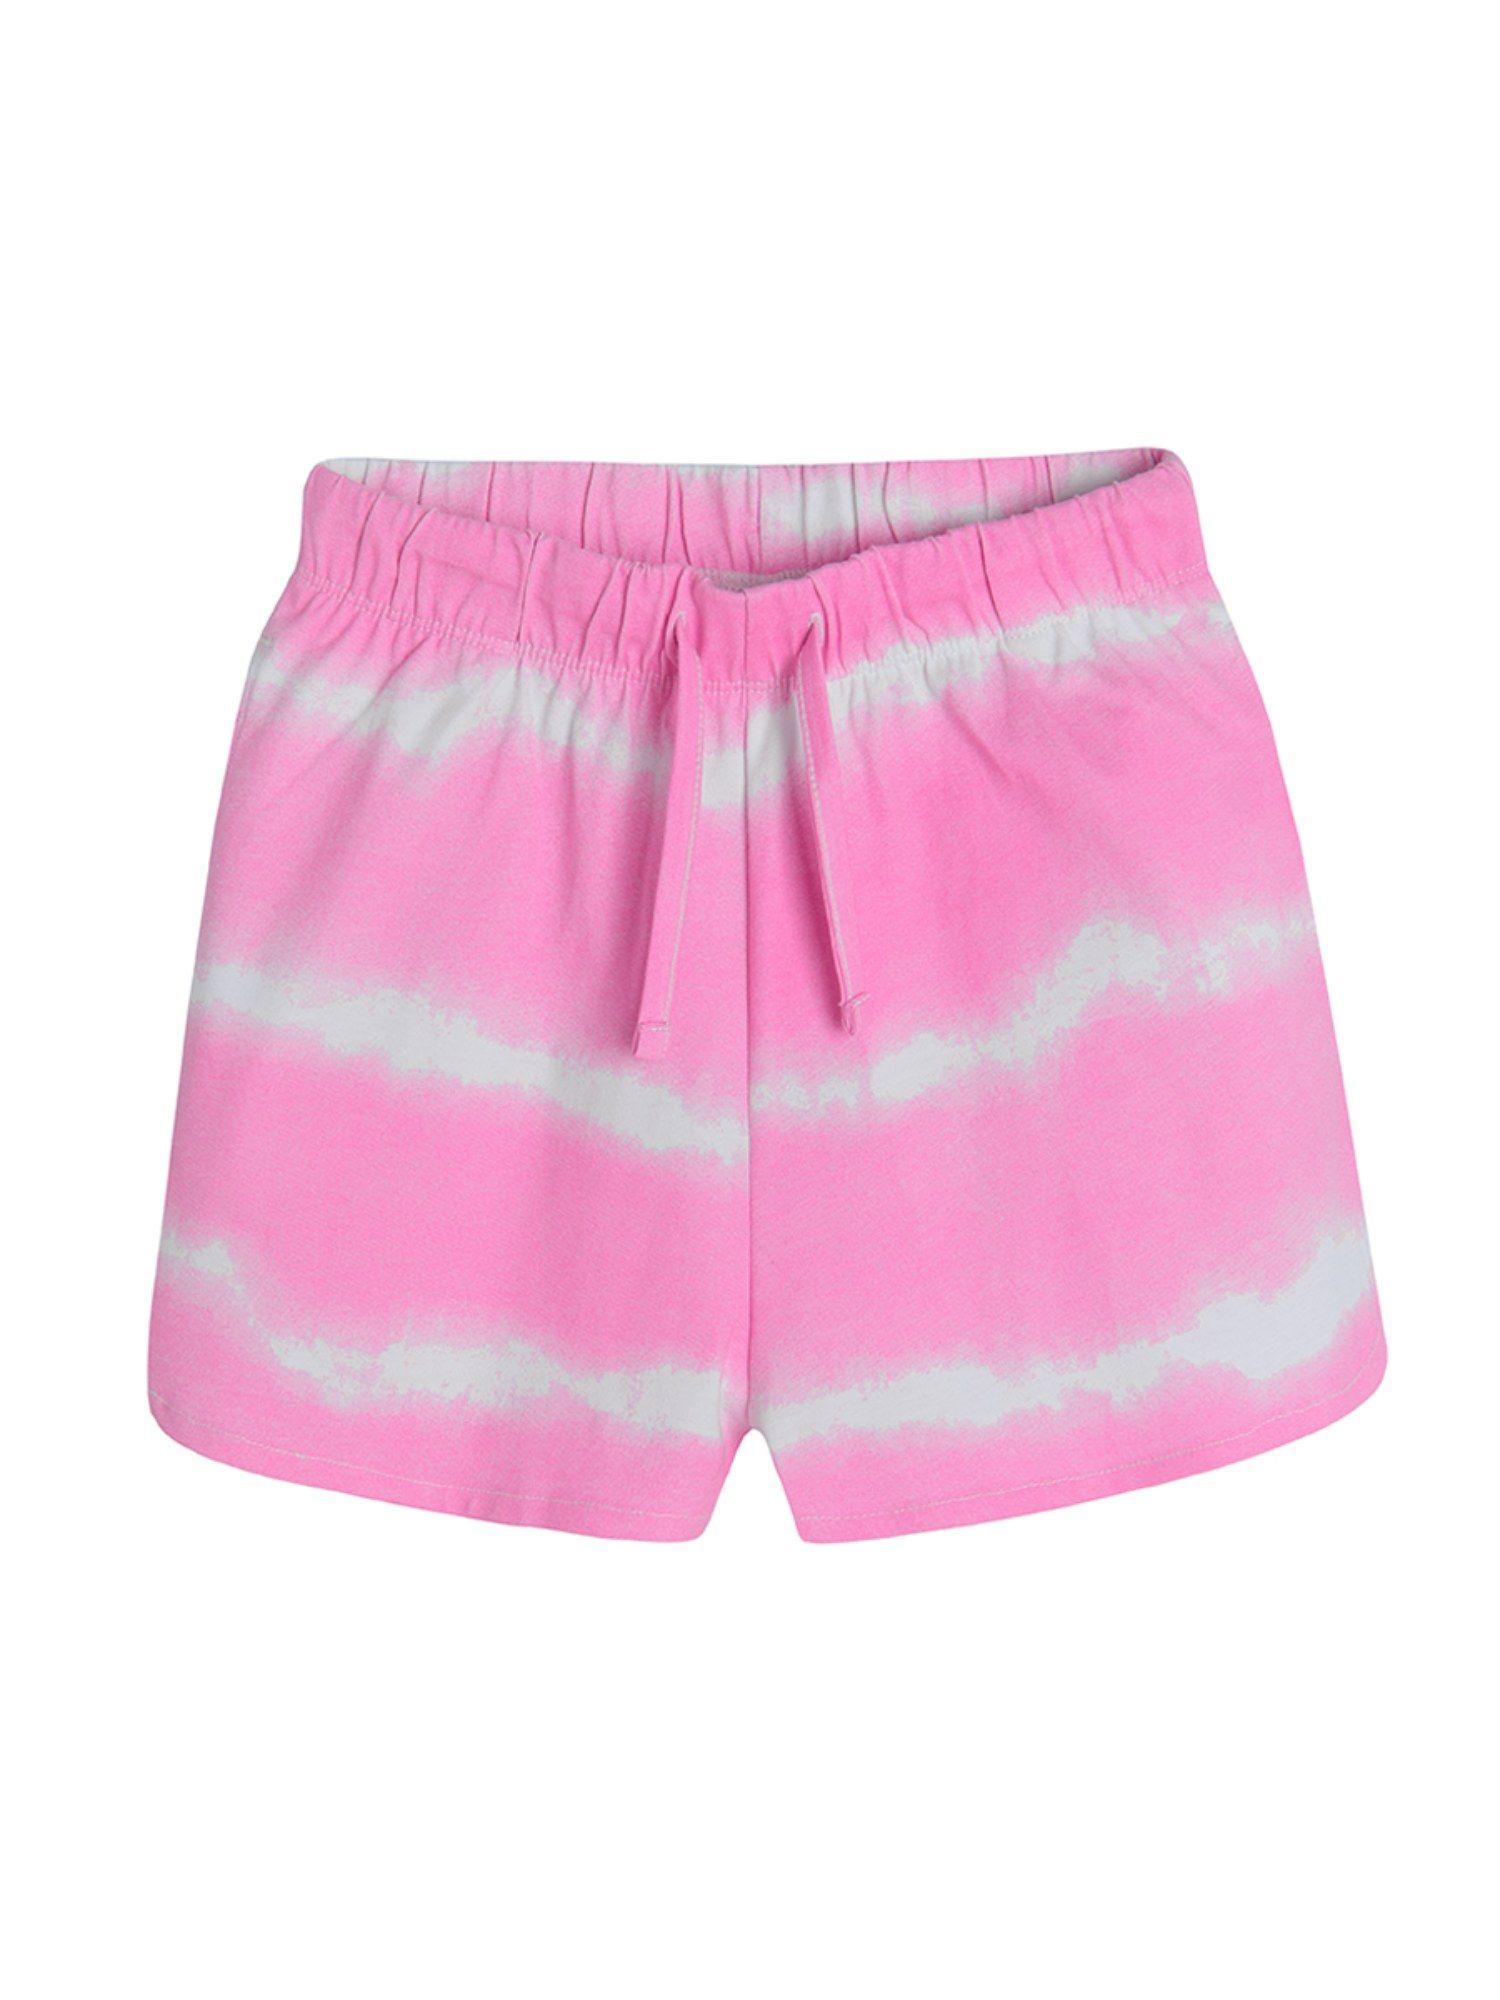 smyk-girls-pink-tie-&-dye-shorts